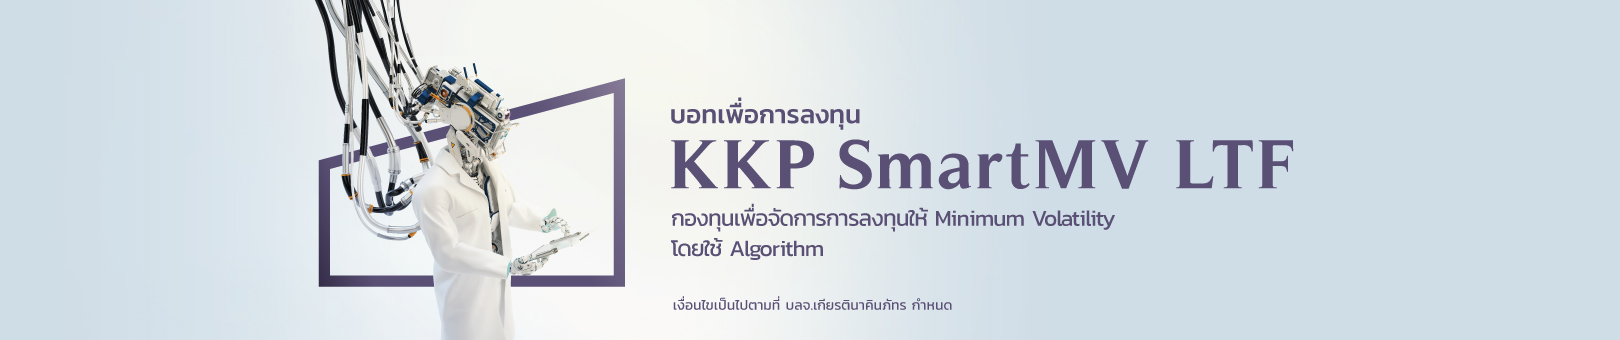 KKP-Smart-MV-LTF_1620x340